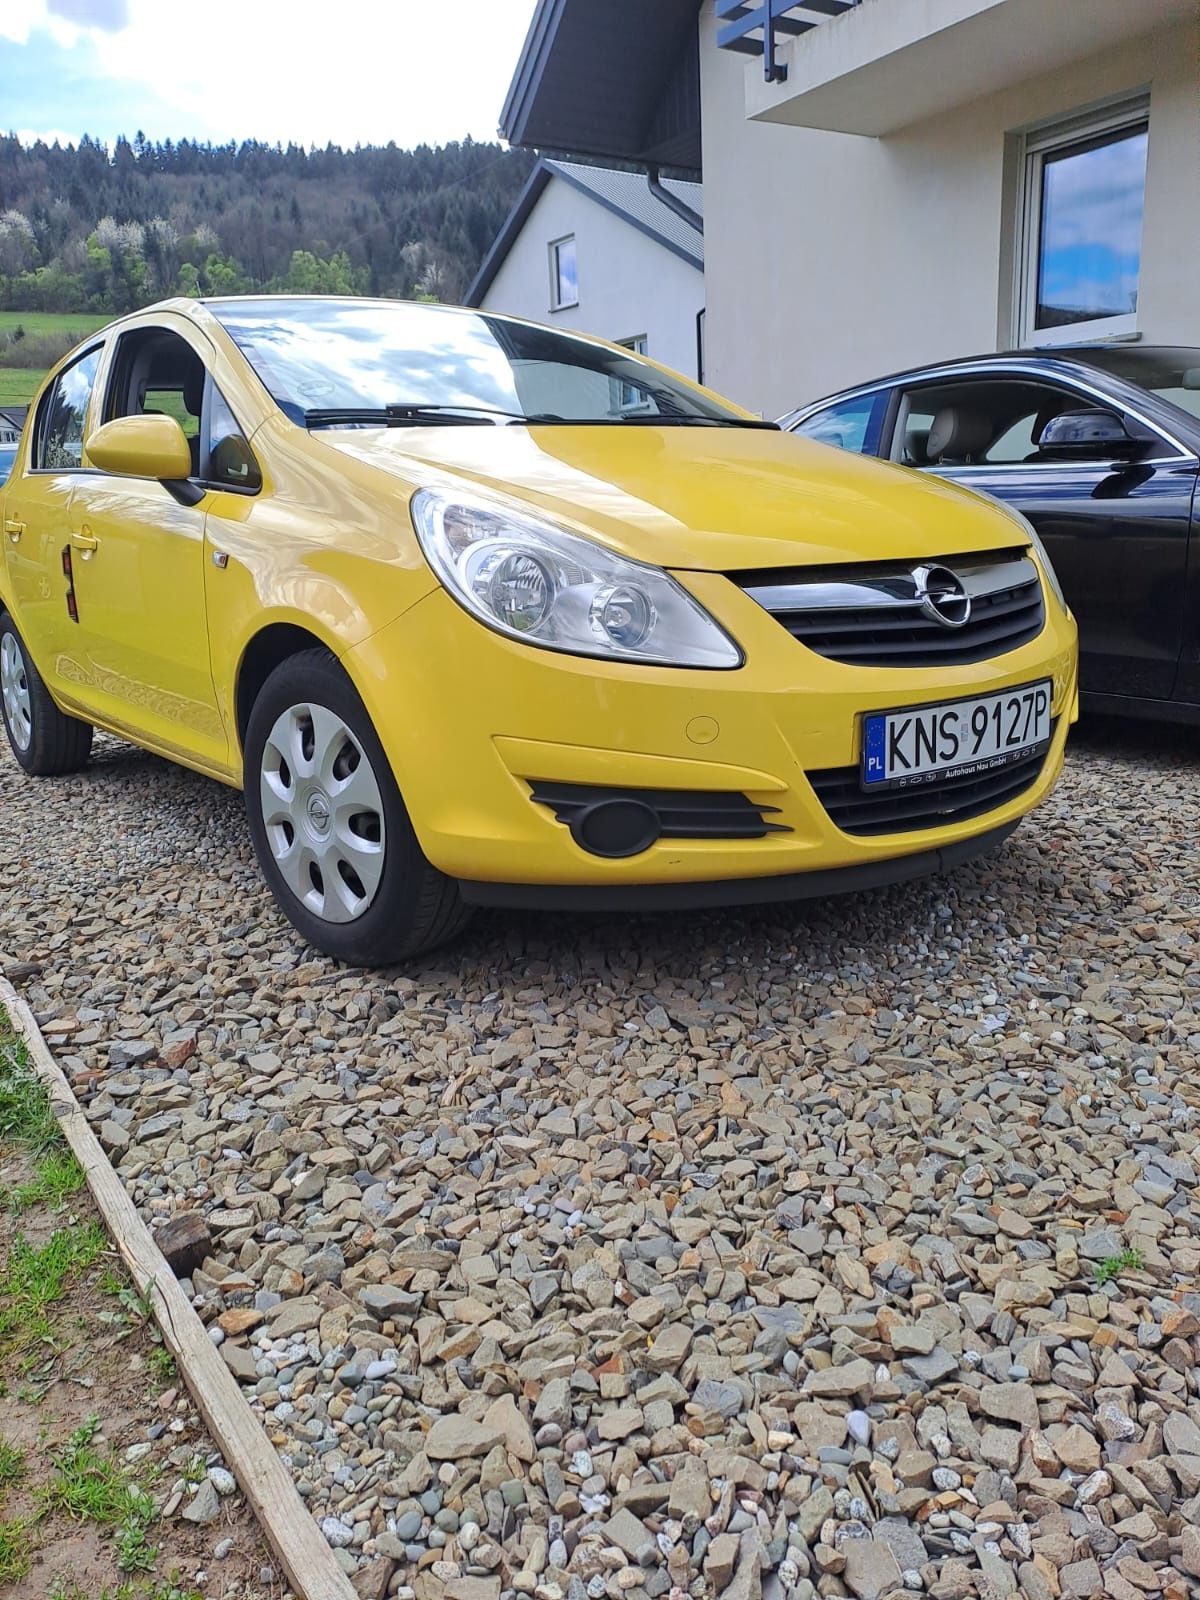 Opel corsa ecoflex